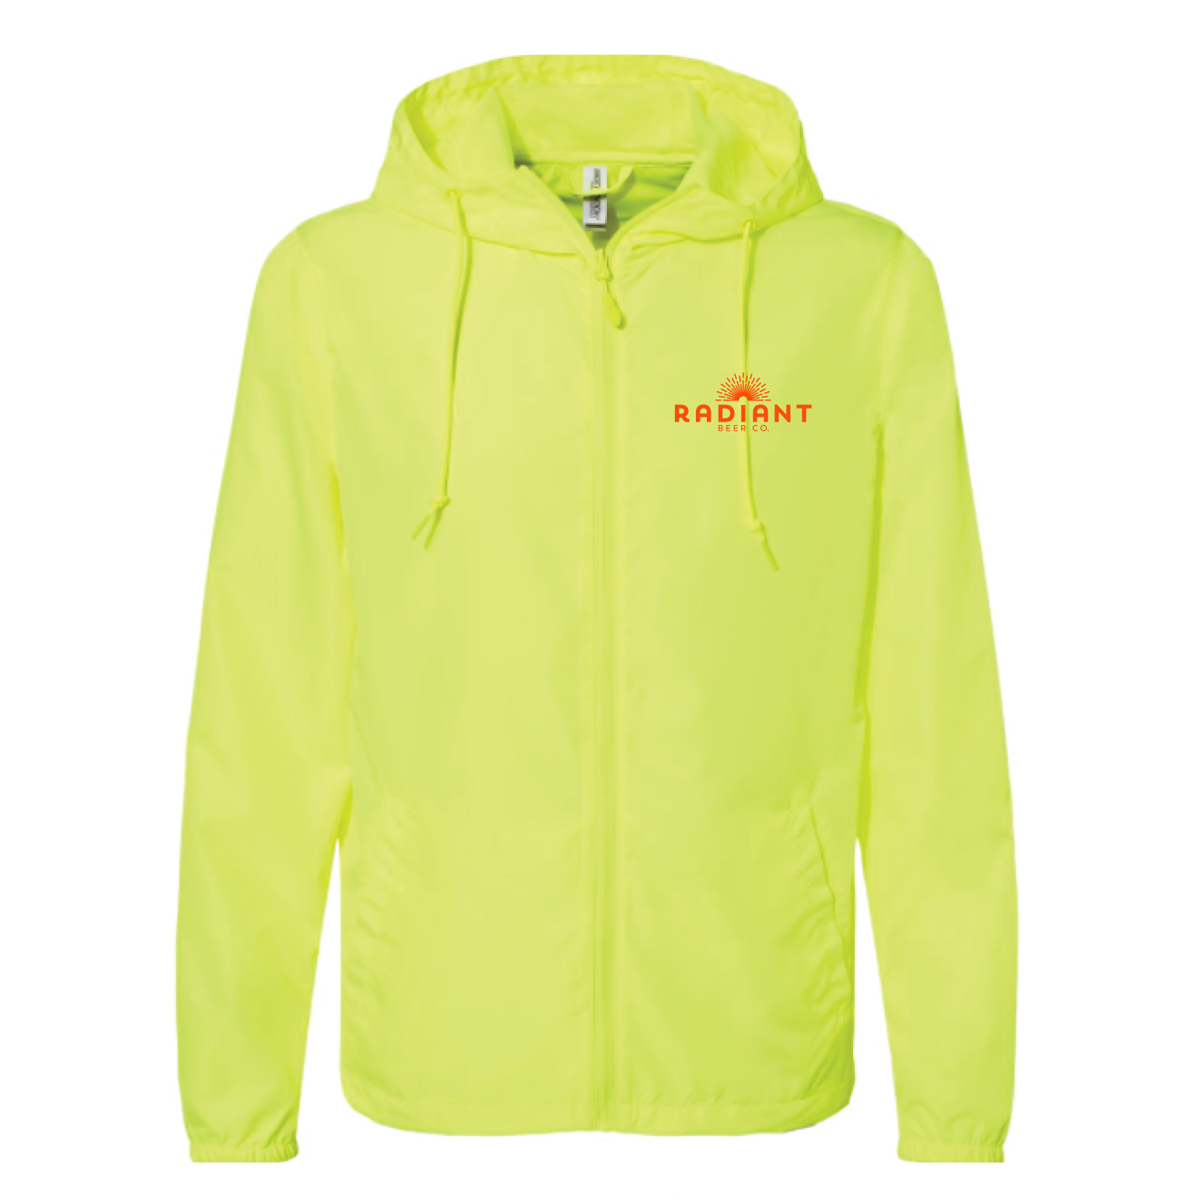 Radiant Windbreaker Jacket - Neon Yellow